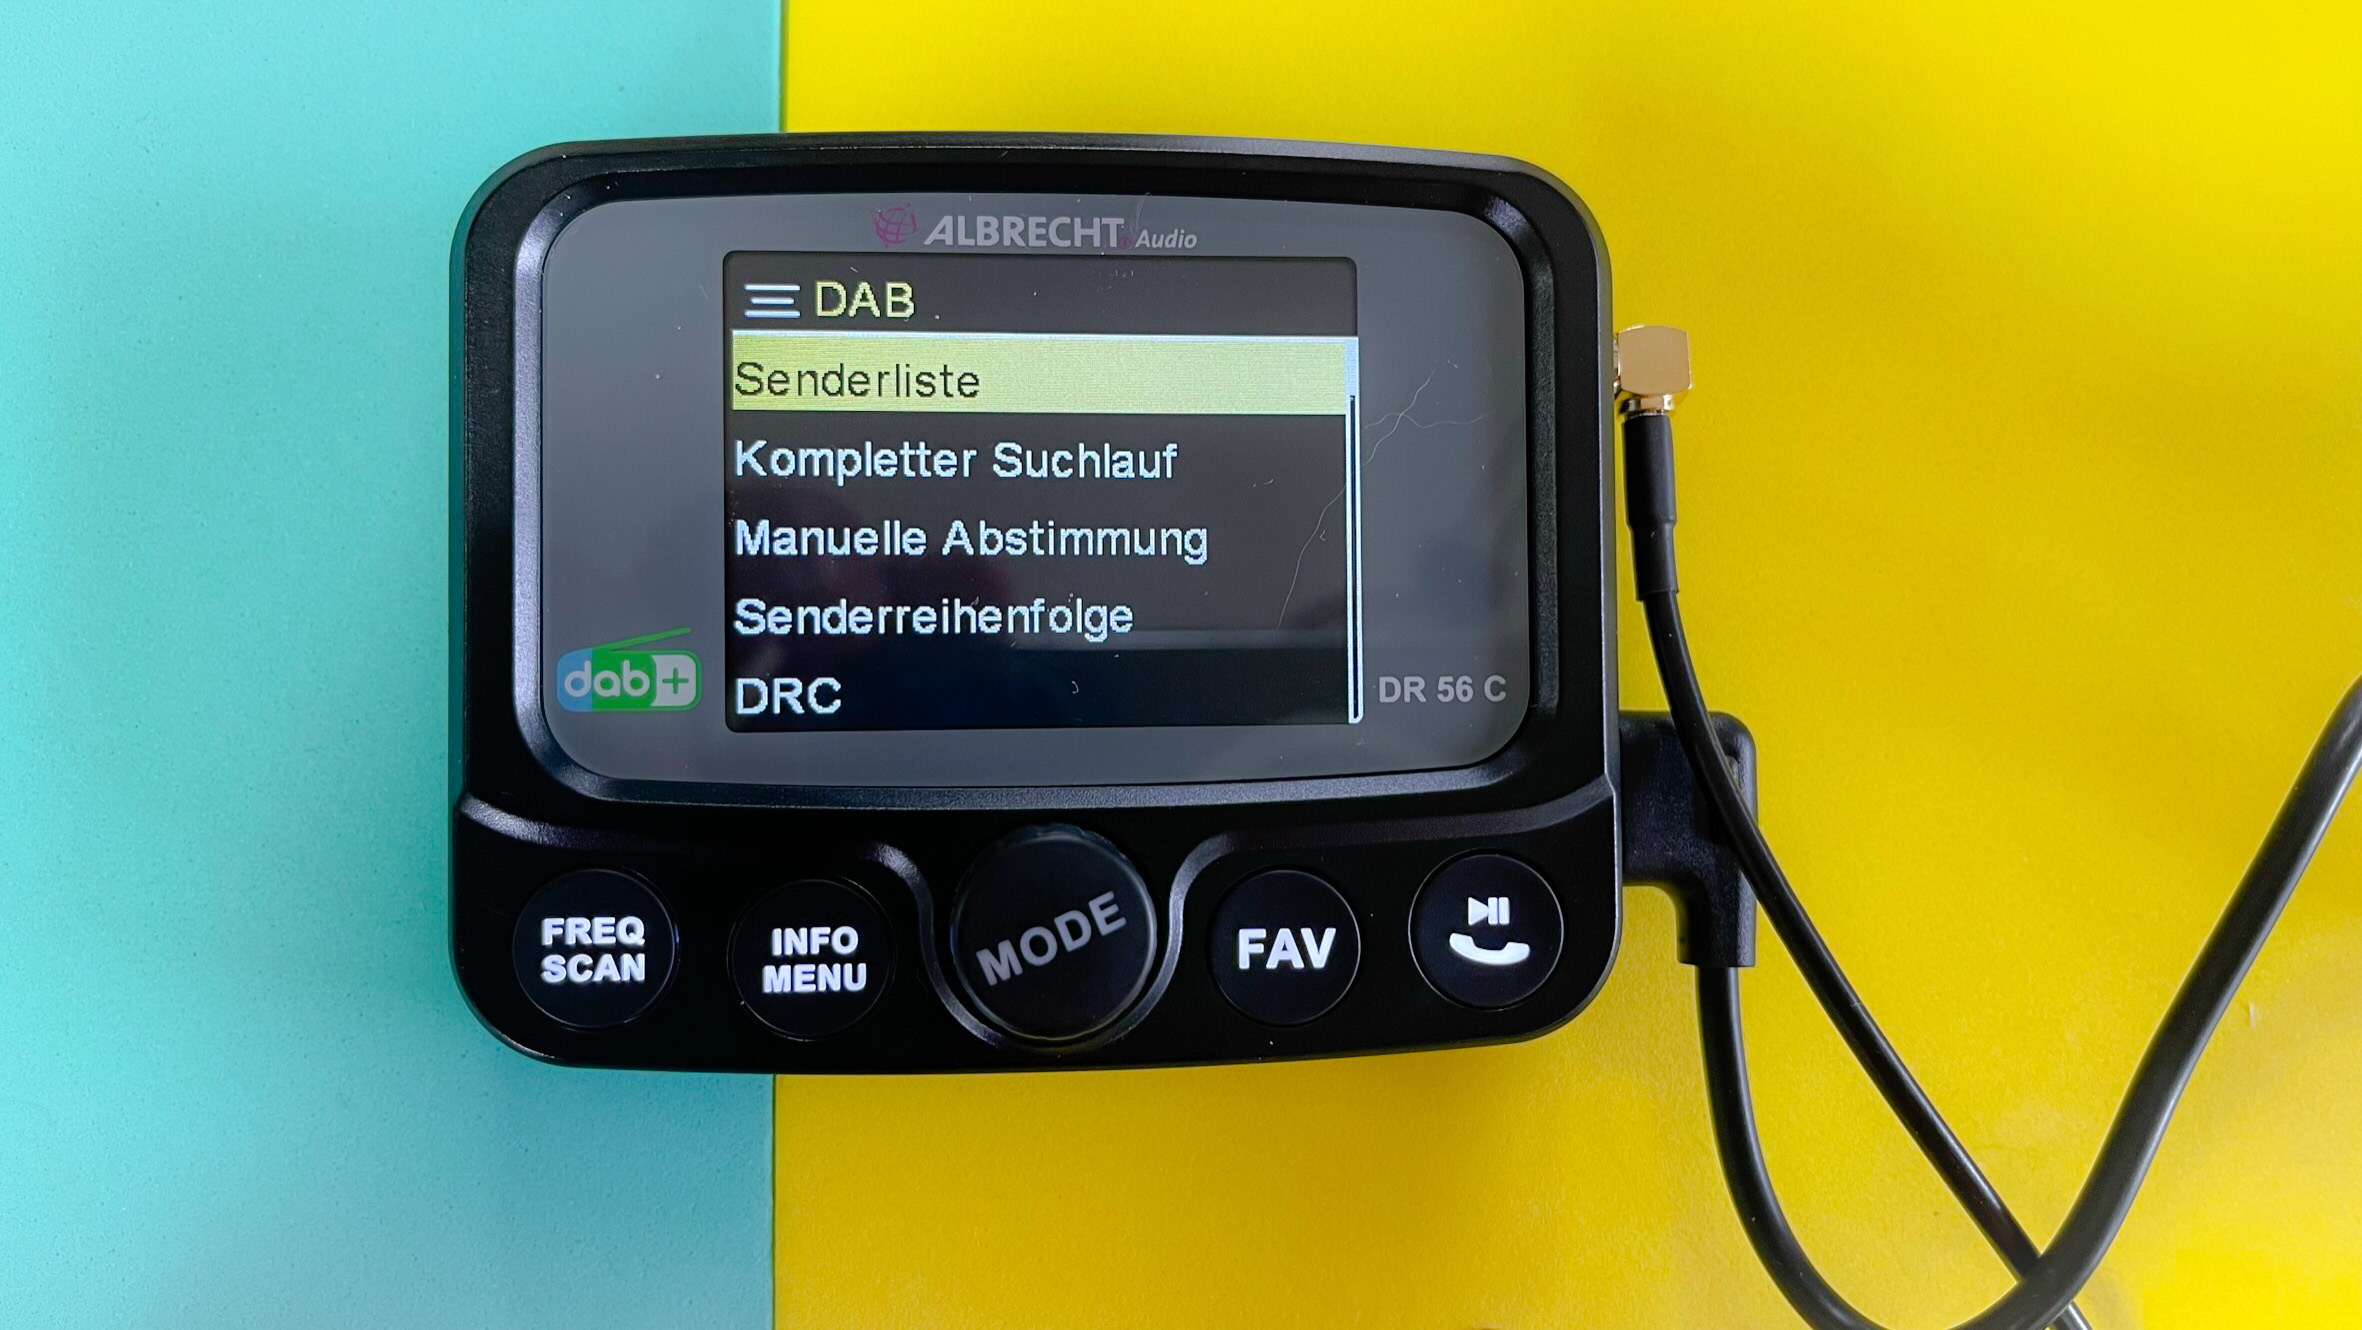 Albrecht DR 56+ DAB+ Autoradio-Adapter mit Bluetooth - Zubehör für Car HiFi  